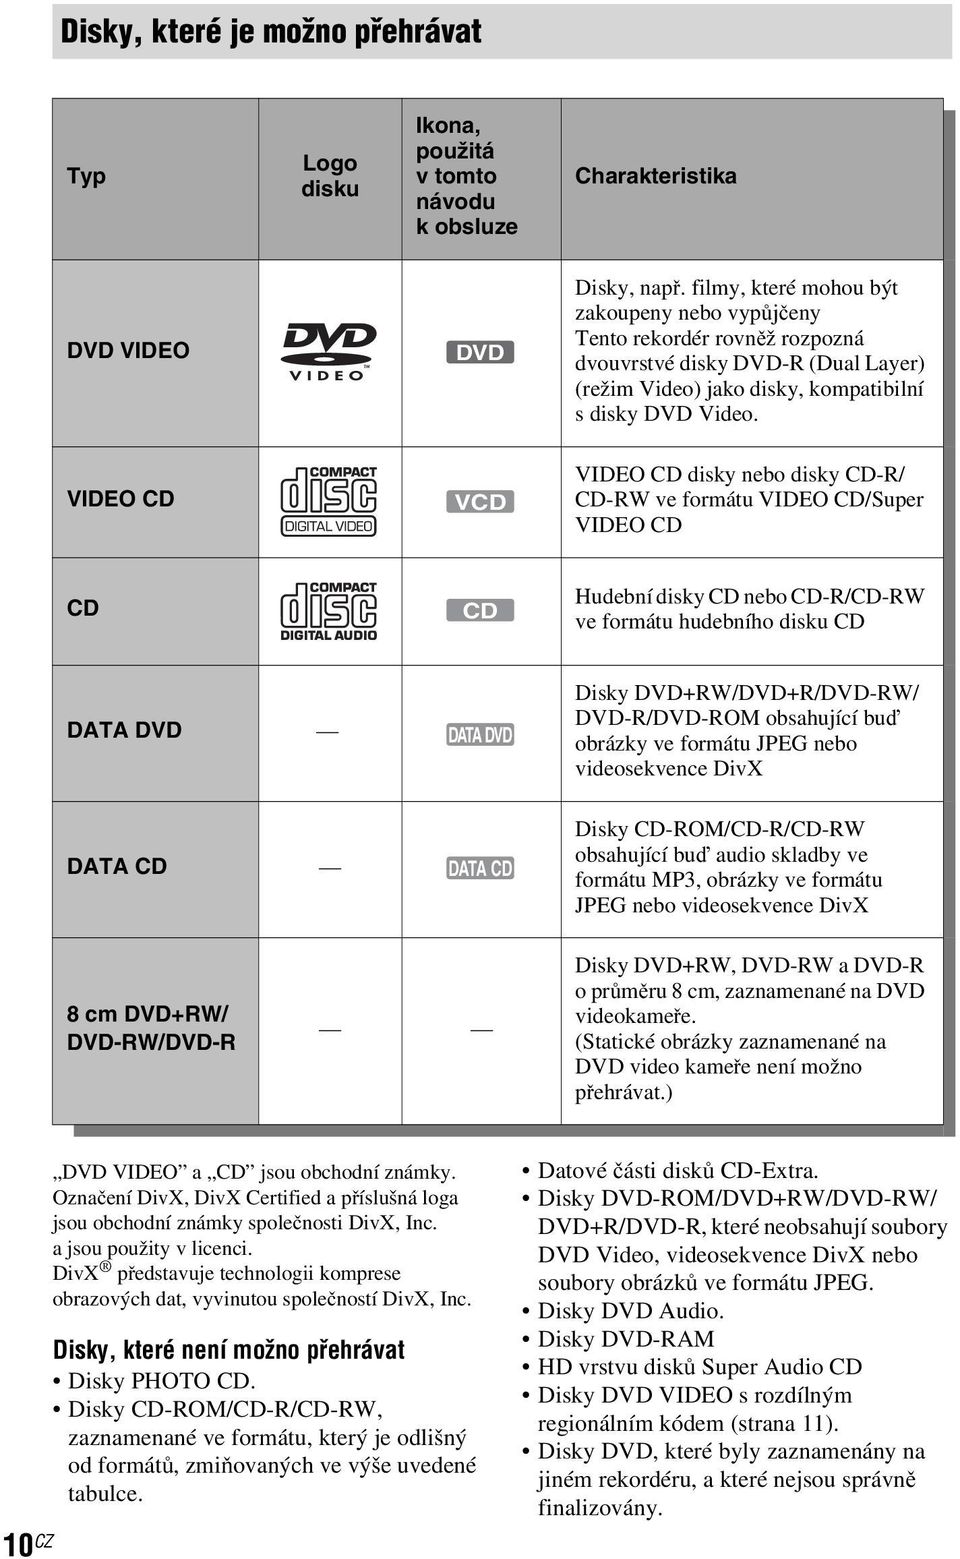 VIDEO CD VCD VIDEO CD disky nebo disky CD-R/ CD-RW ve formátu VIDEO CD/Super VIDEO CD CD CD Hudební disky CD nebo CD-R/CD-RW ve formátu hudebního disku CD DATA DVD DATA DVD Disky DVD+RW/DVD+R/DVD-RW/